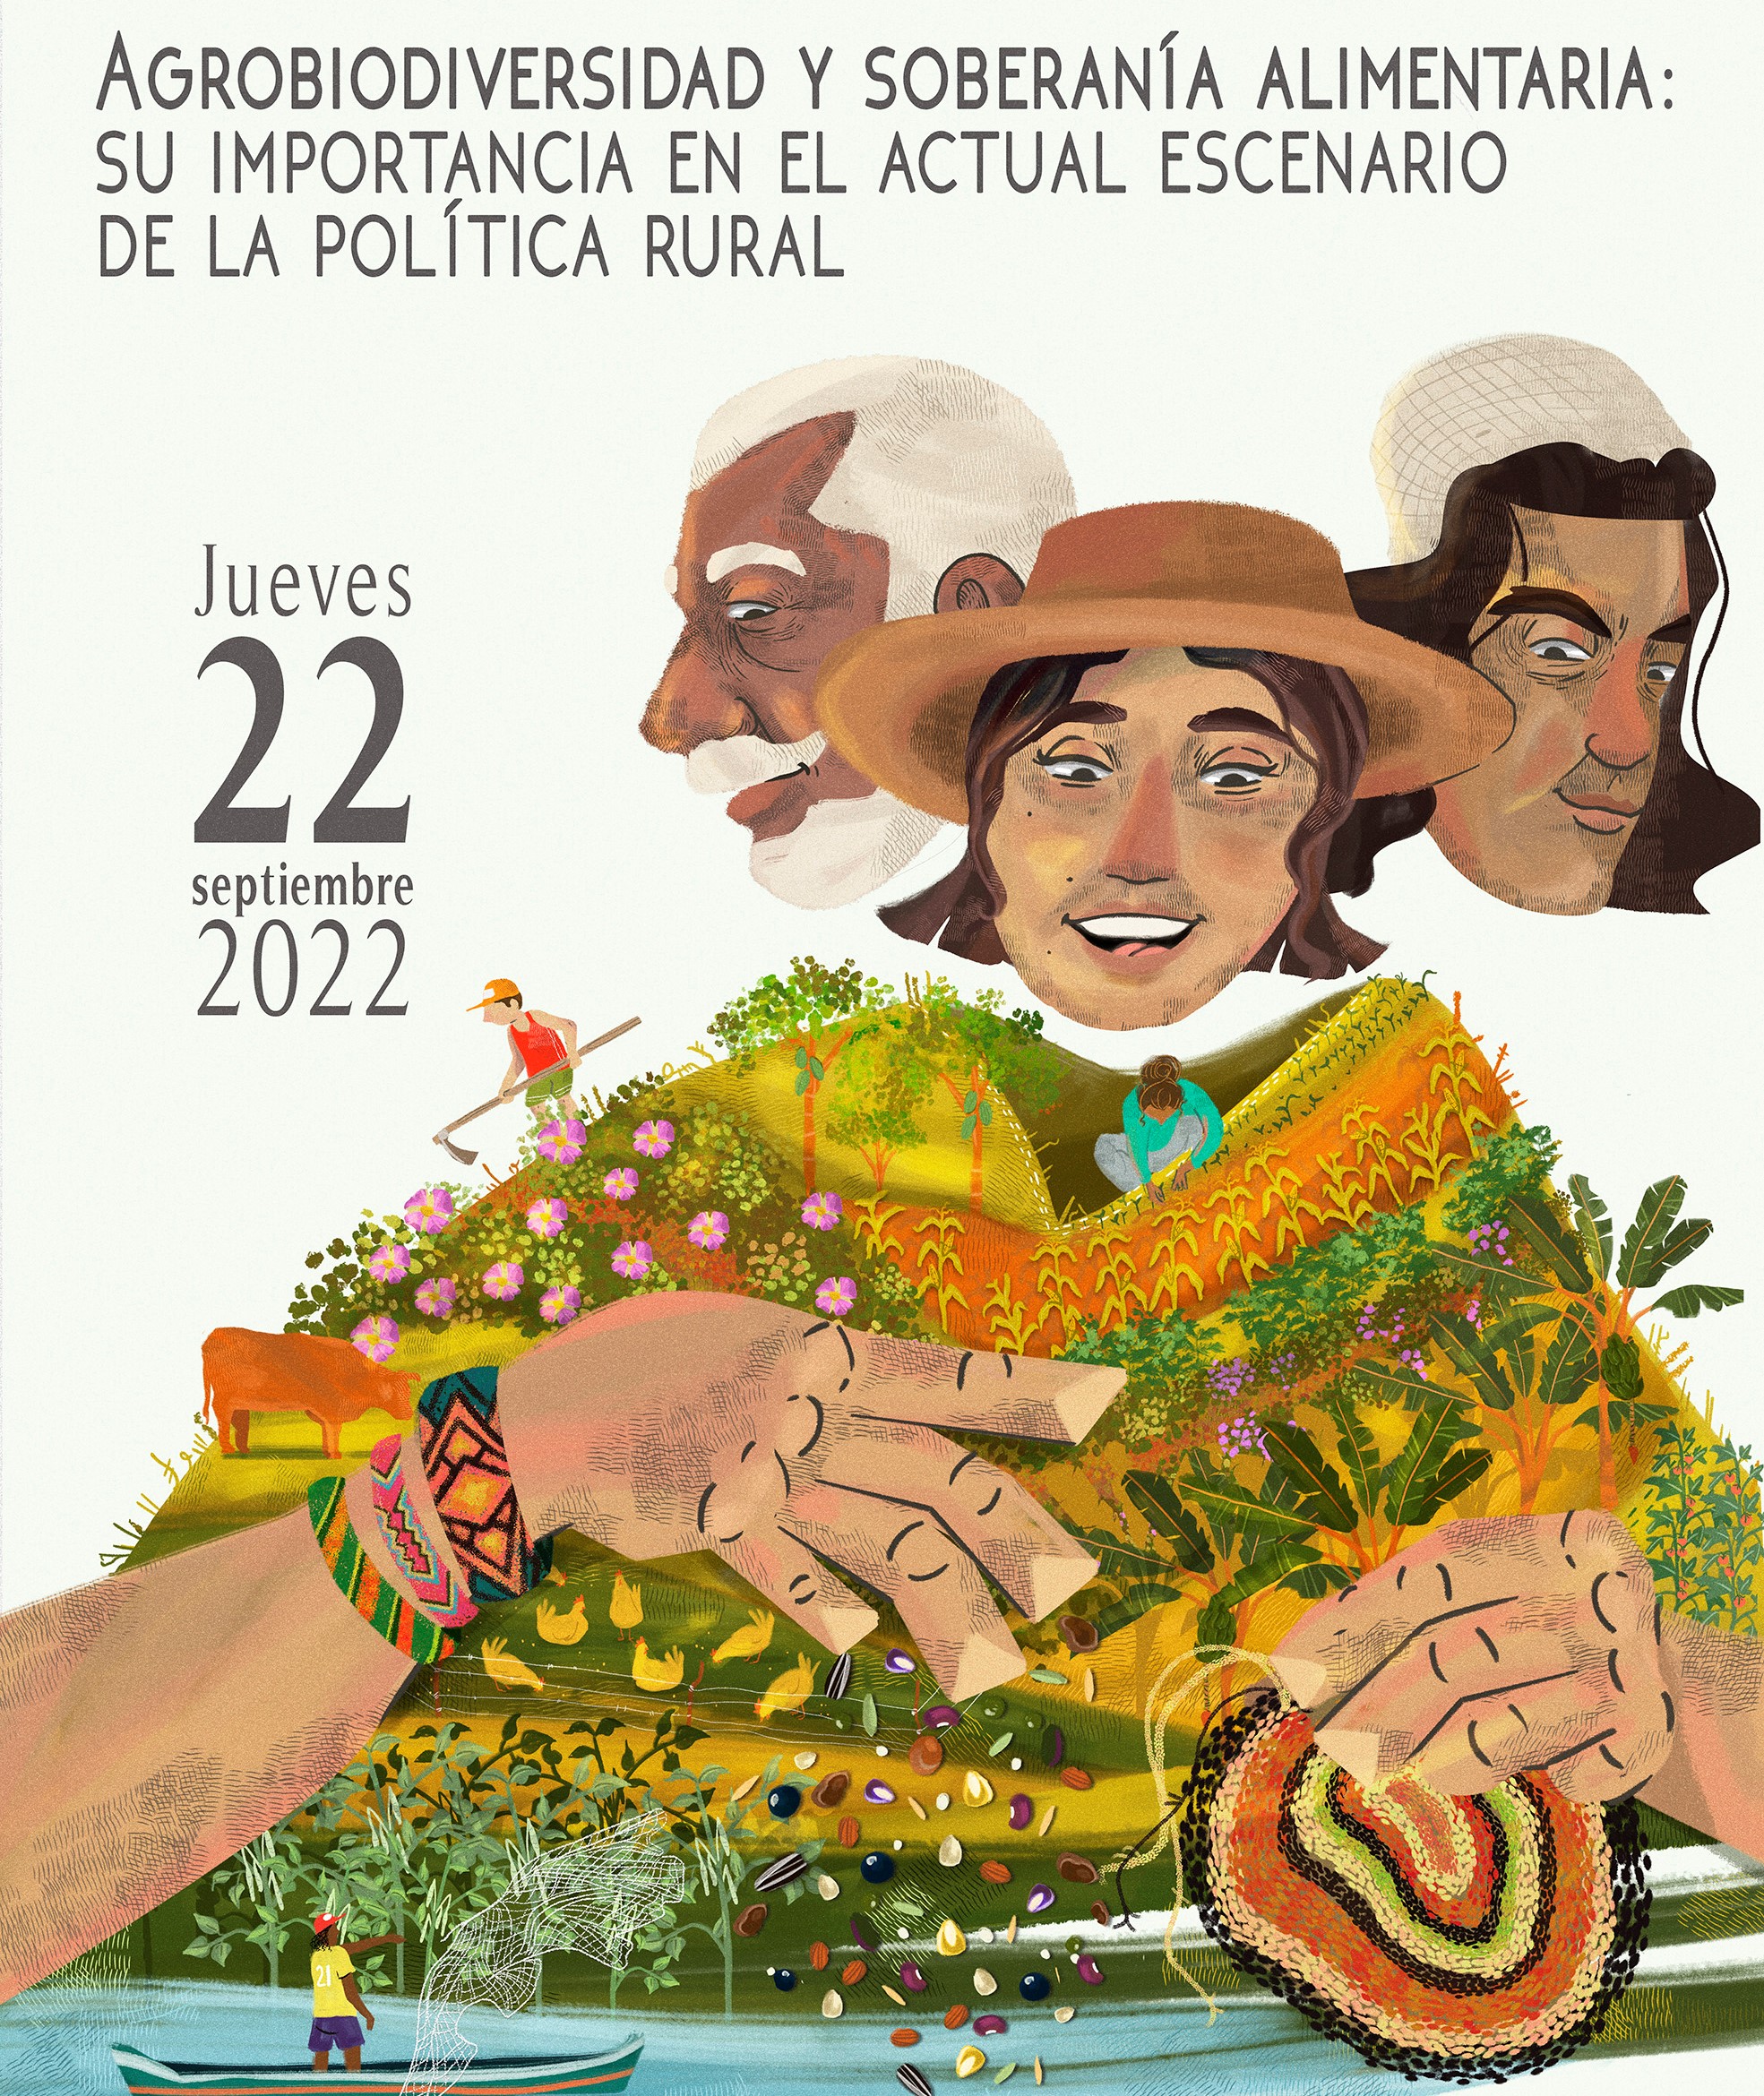 Gráfica alusiva a Evento "Agrobiodiversidad y soberanía alimentaria: su importancia en el actual escenario de la política rural"